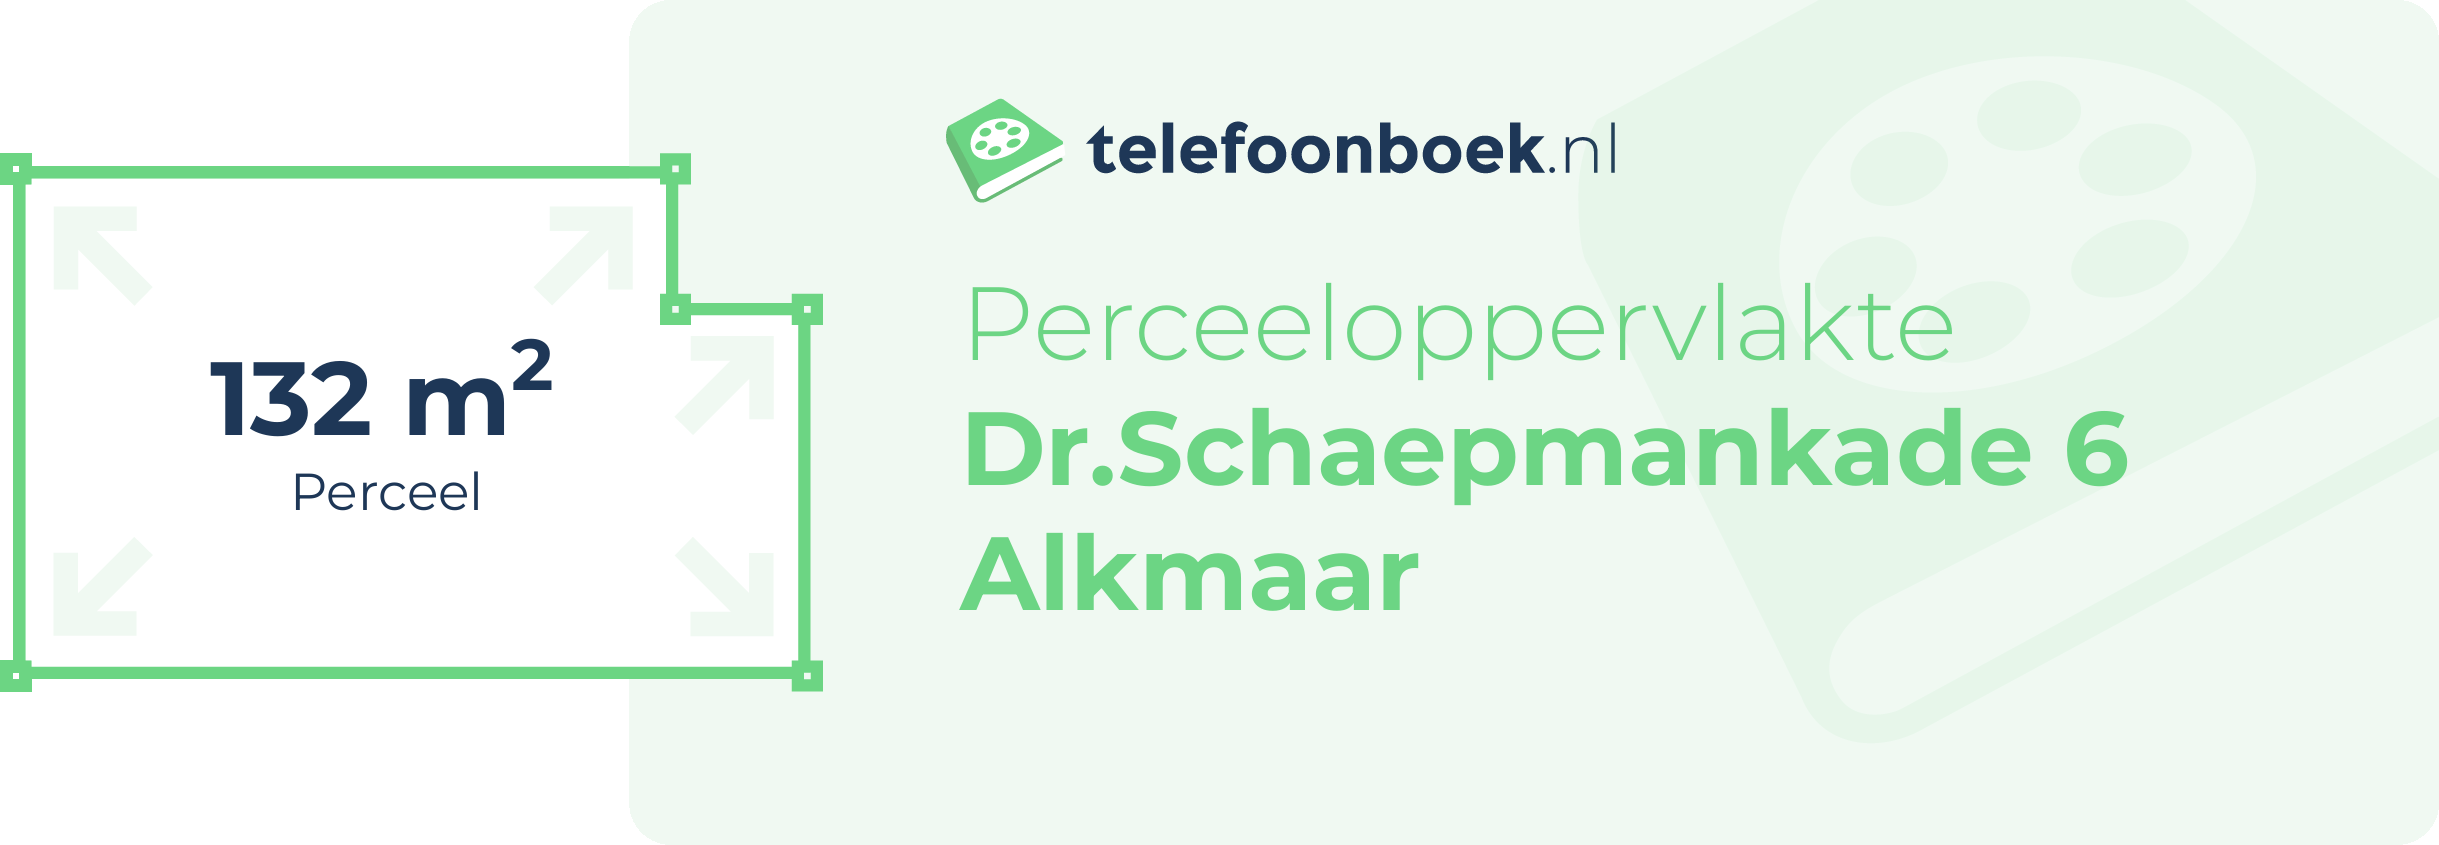 Perceeloppervlakte Dr.Schaepmankade 6 Alkmaar